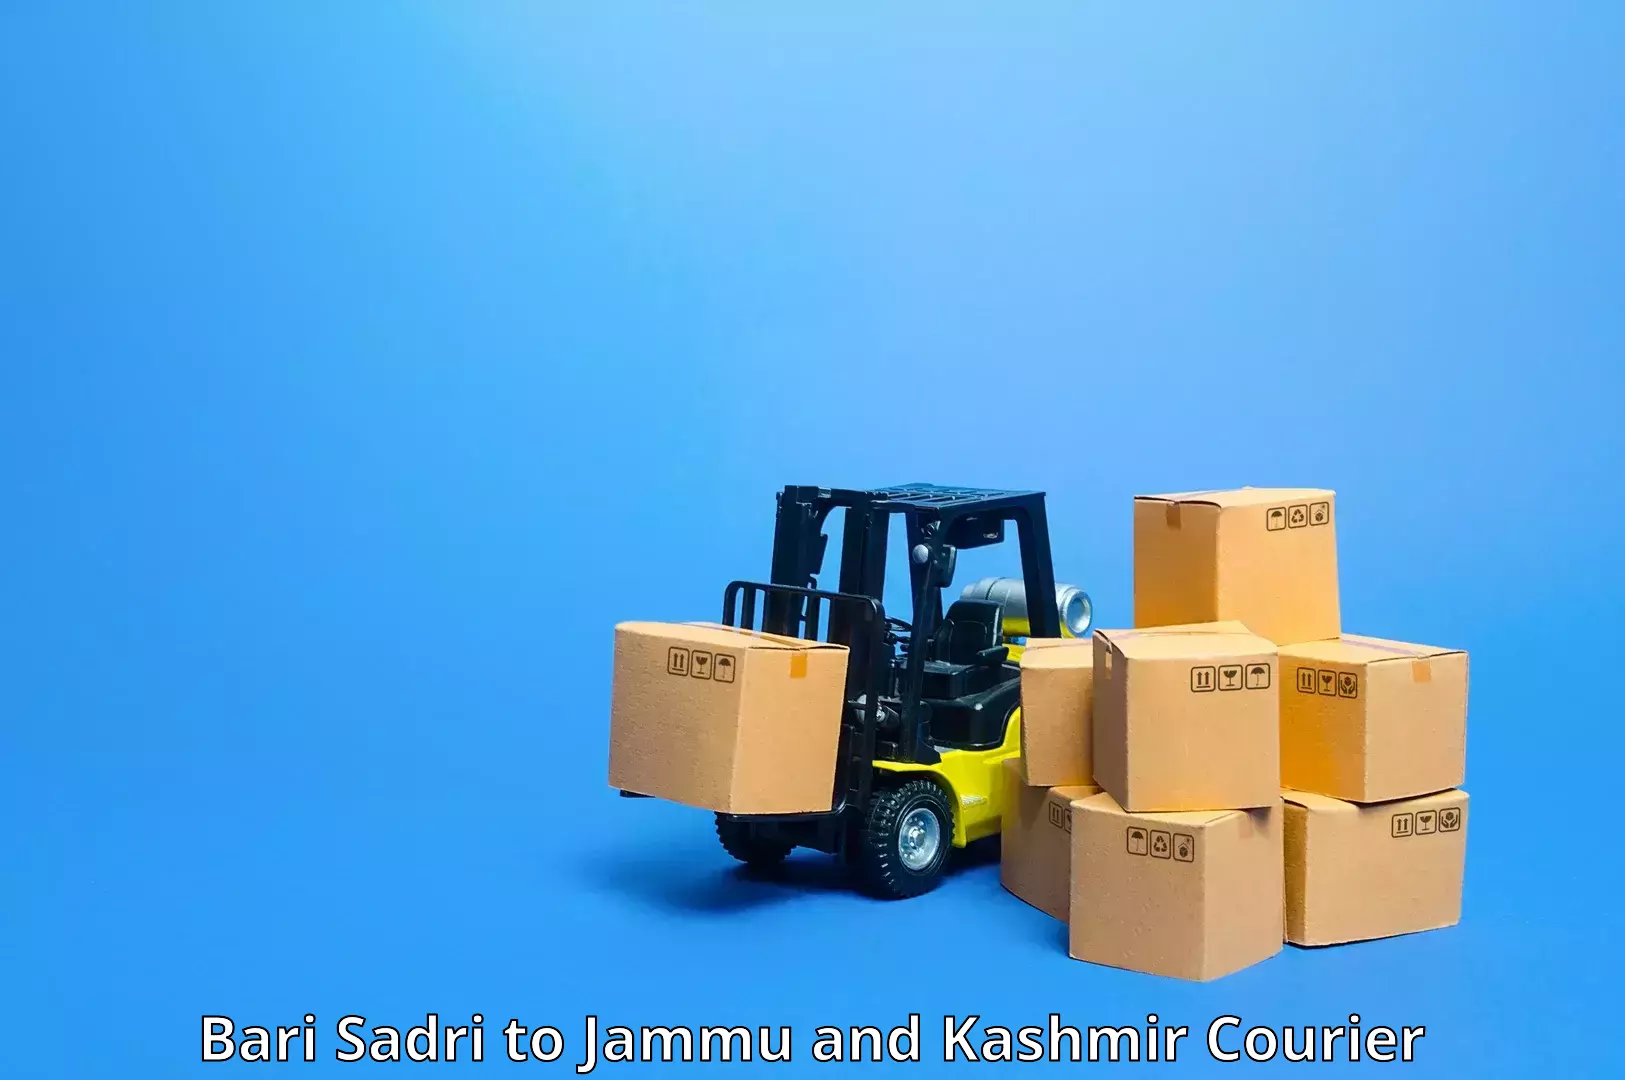 Express package handling Bari Sadri to Srinagar Kashmir